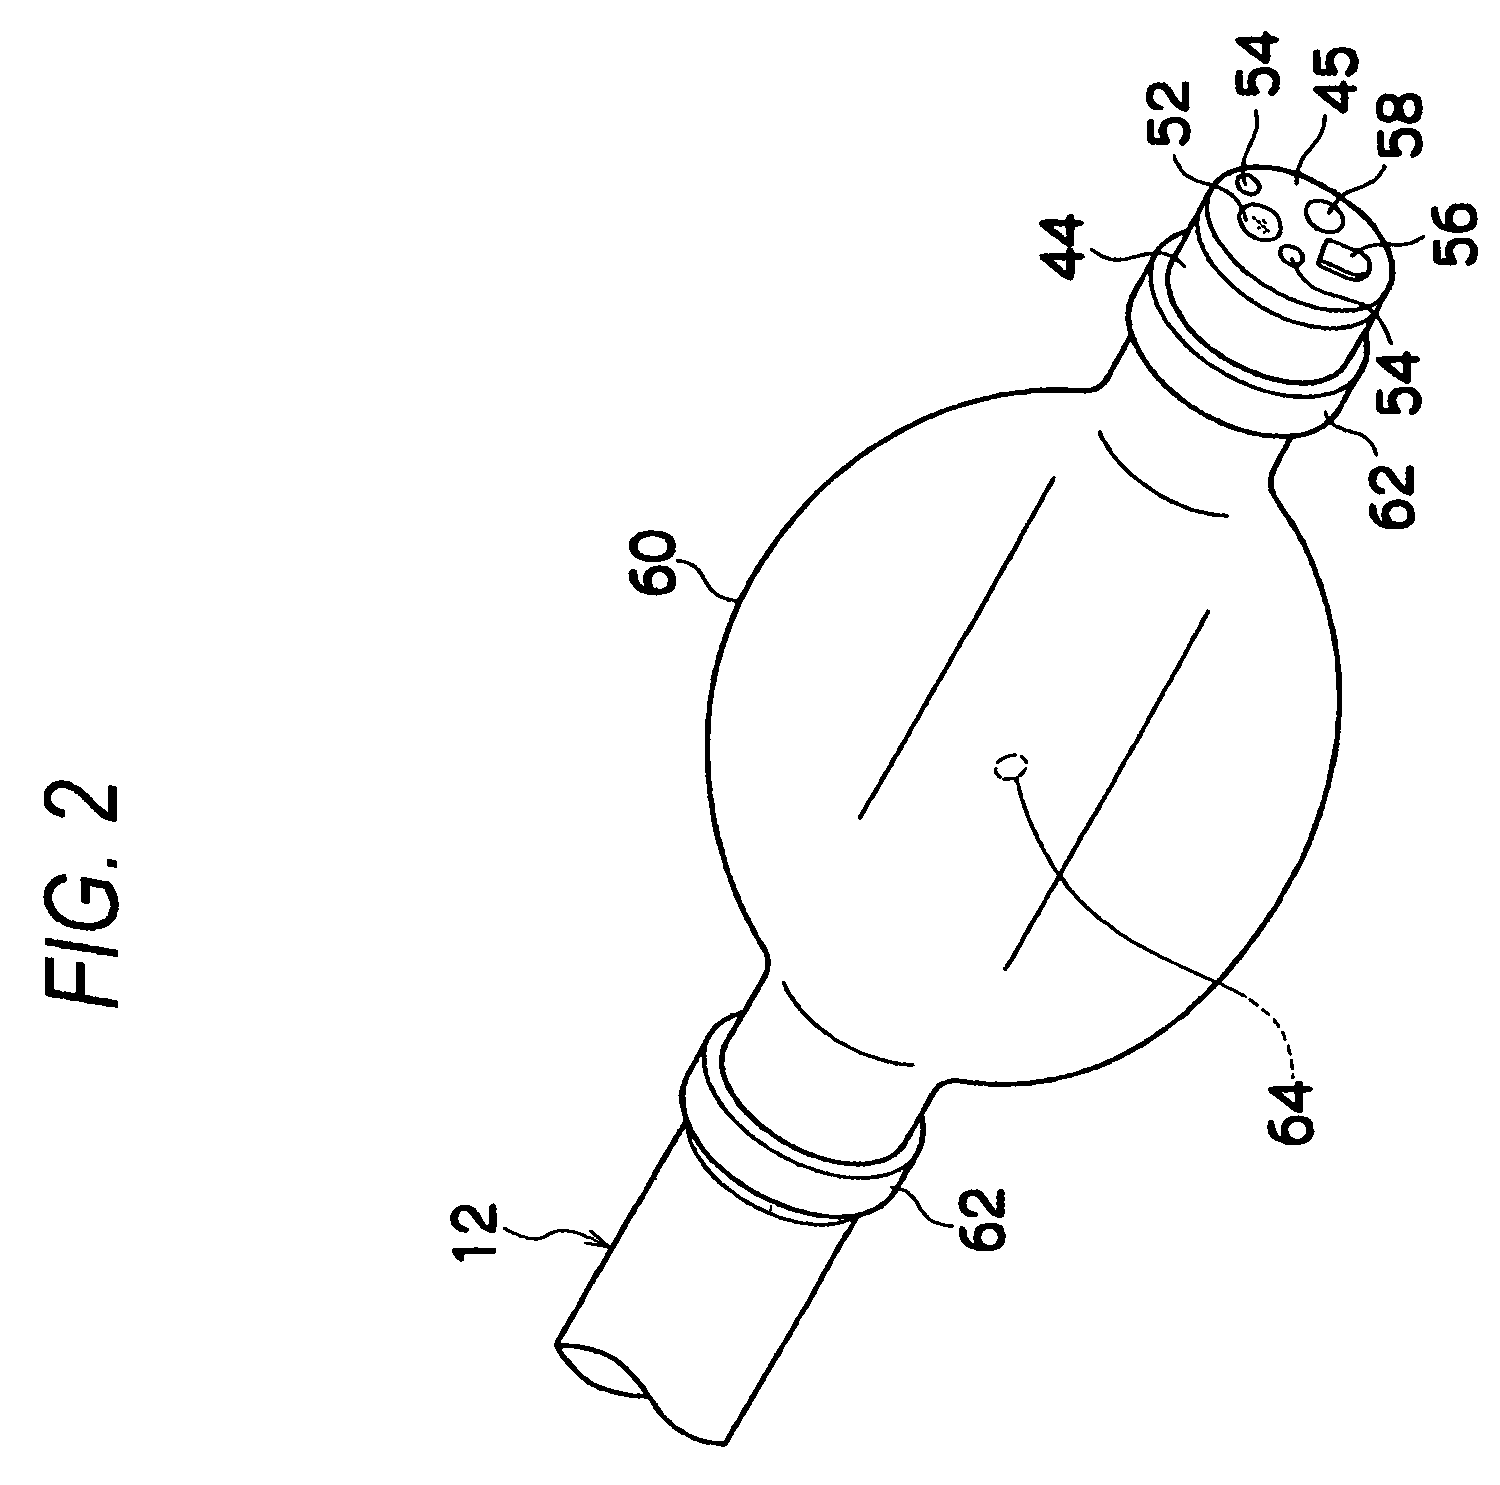 Balloon control apparatus